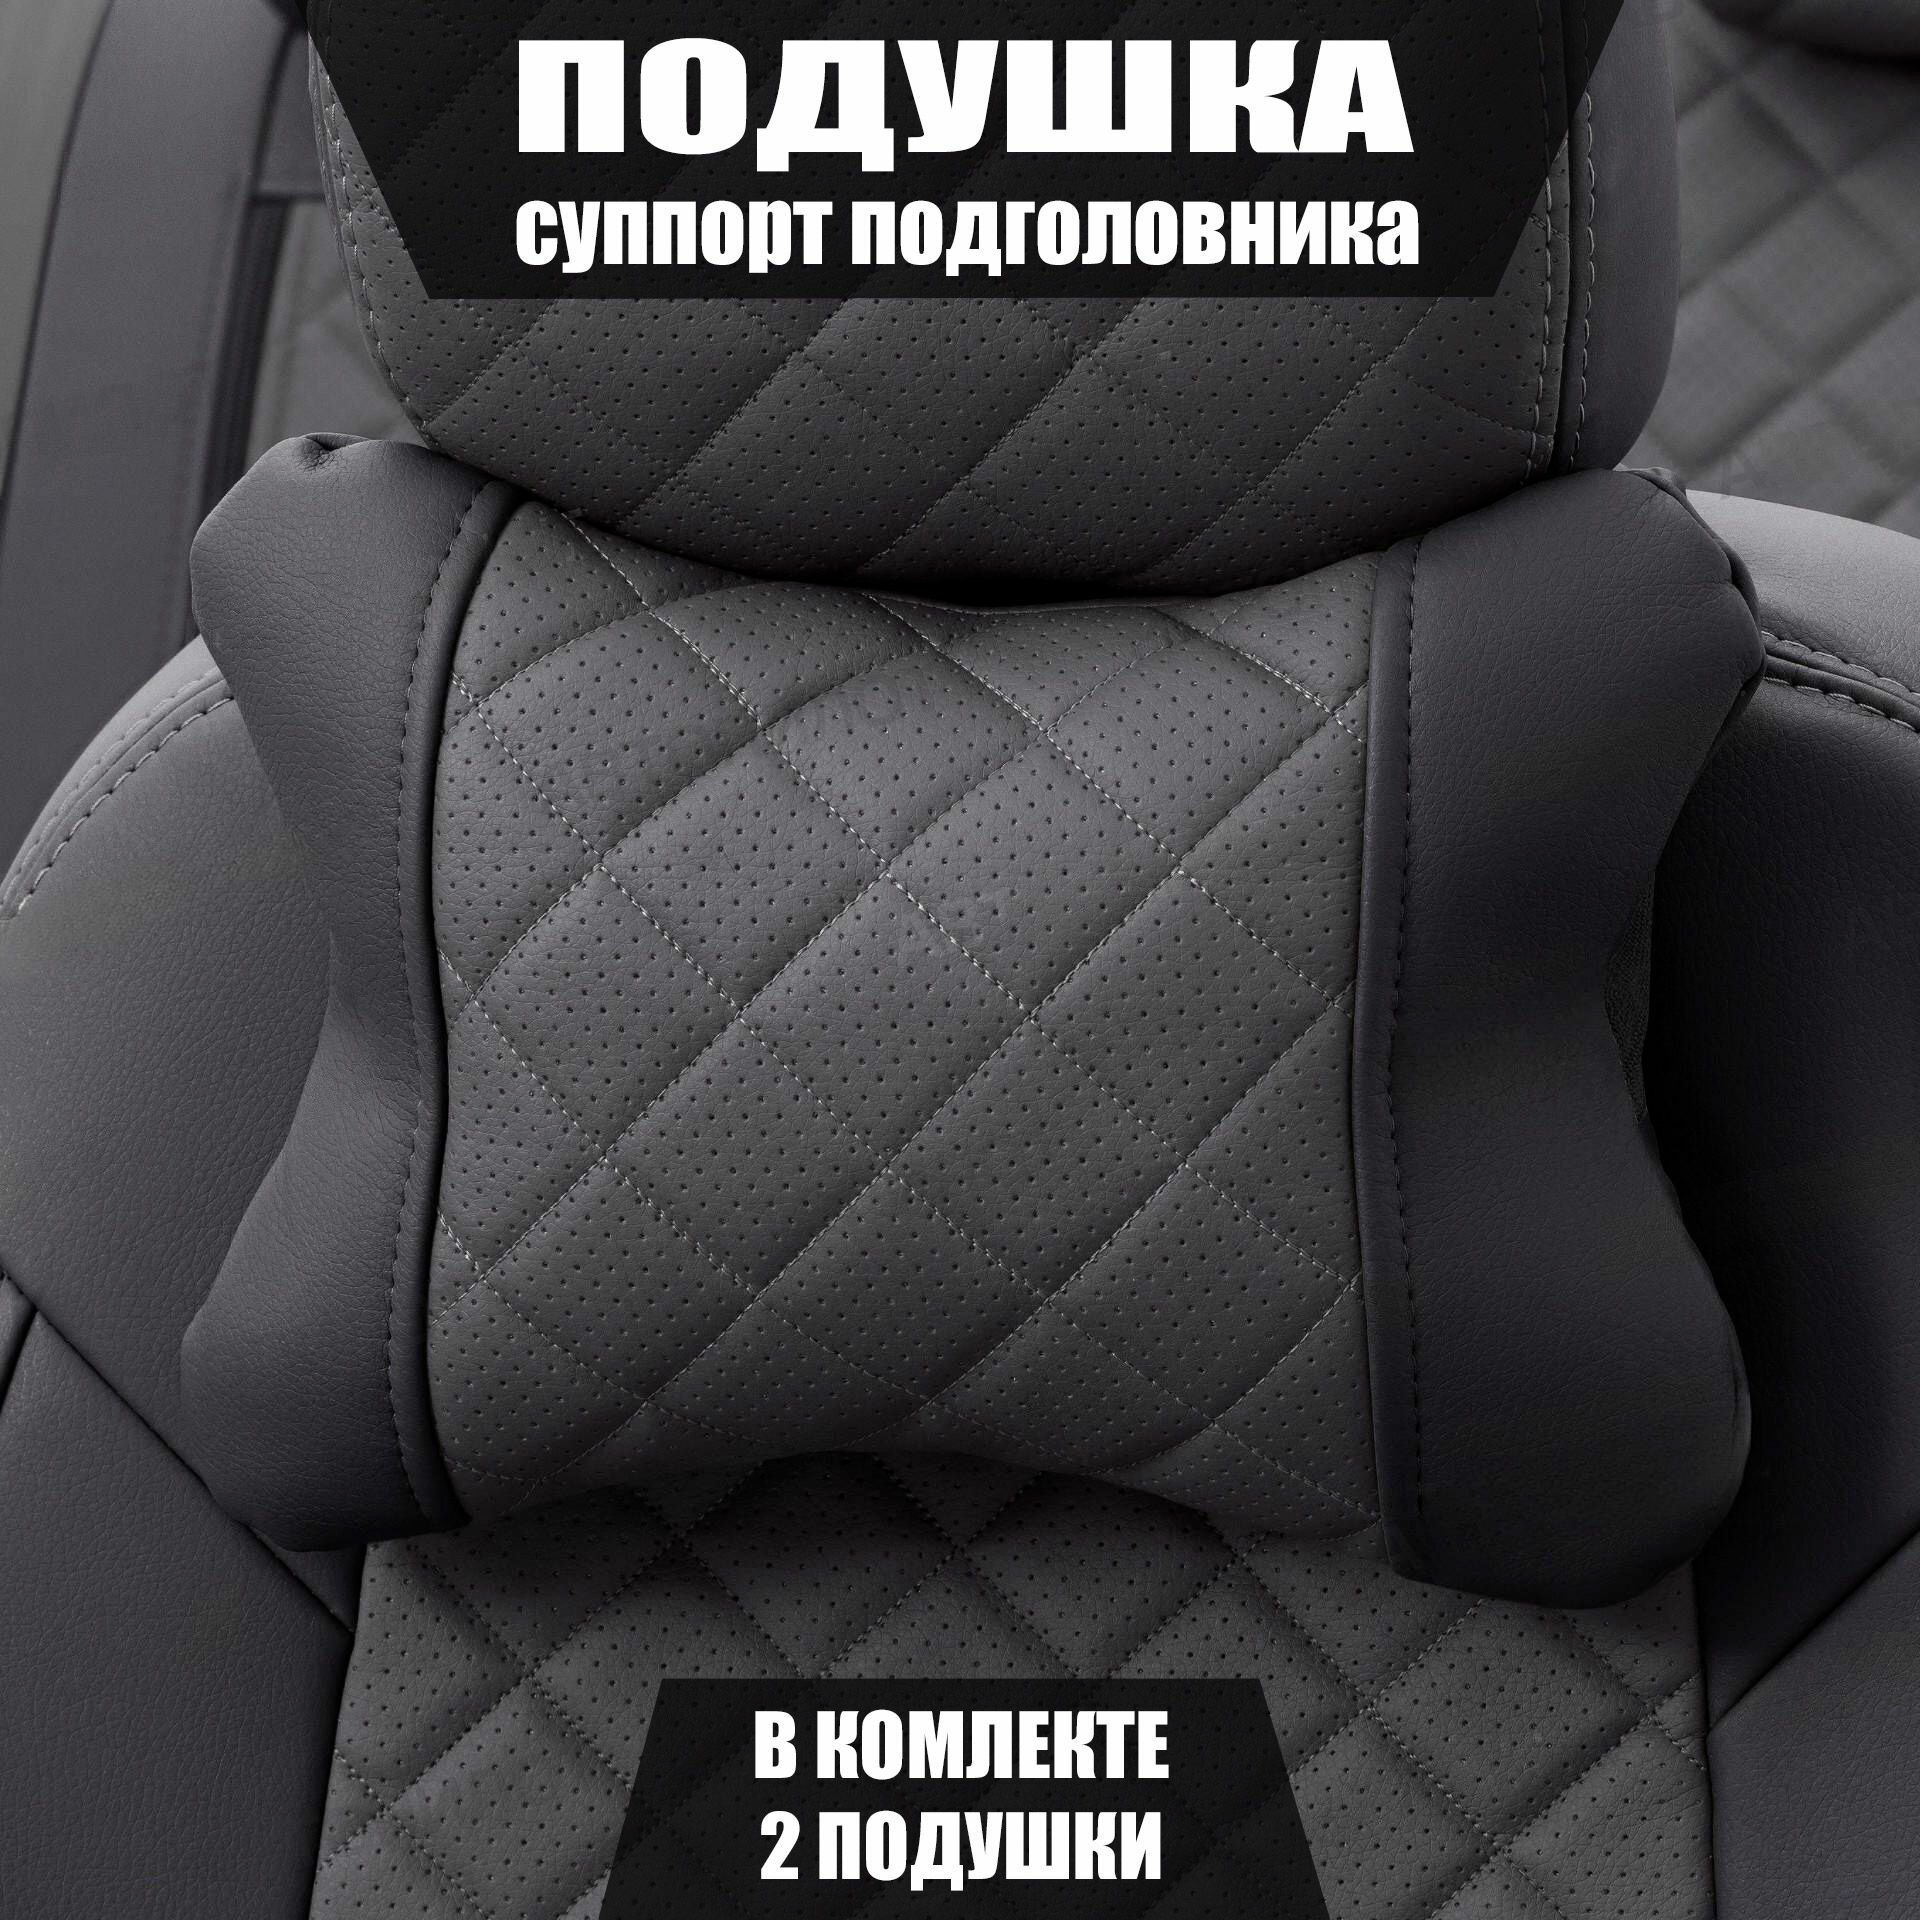 Подушки под шею (суппорт подголовника) для Опель Мерива (2006 - 2010) компактвэн / Opel Meriva Ромб Экокожа 2 подушки Черный